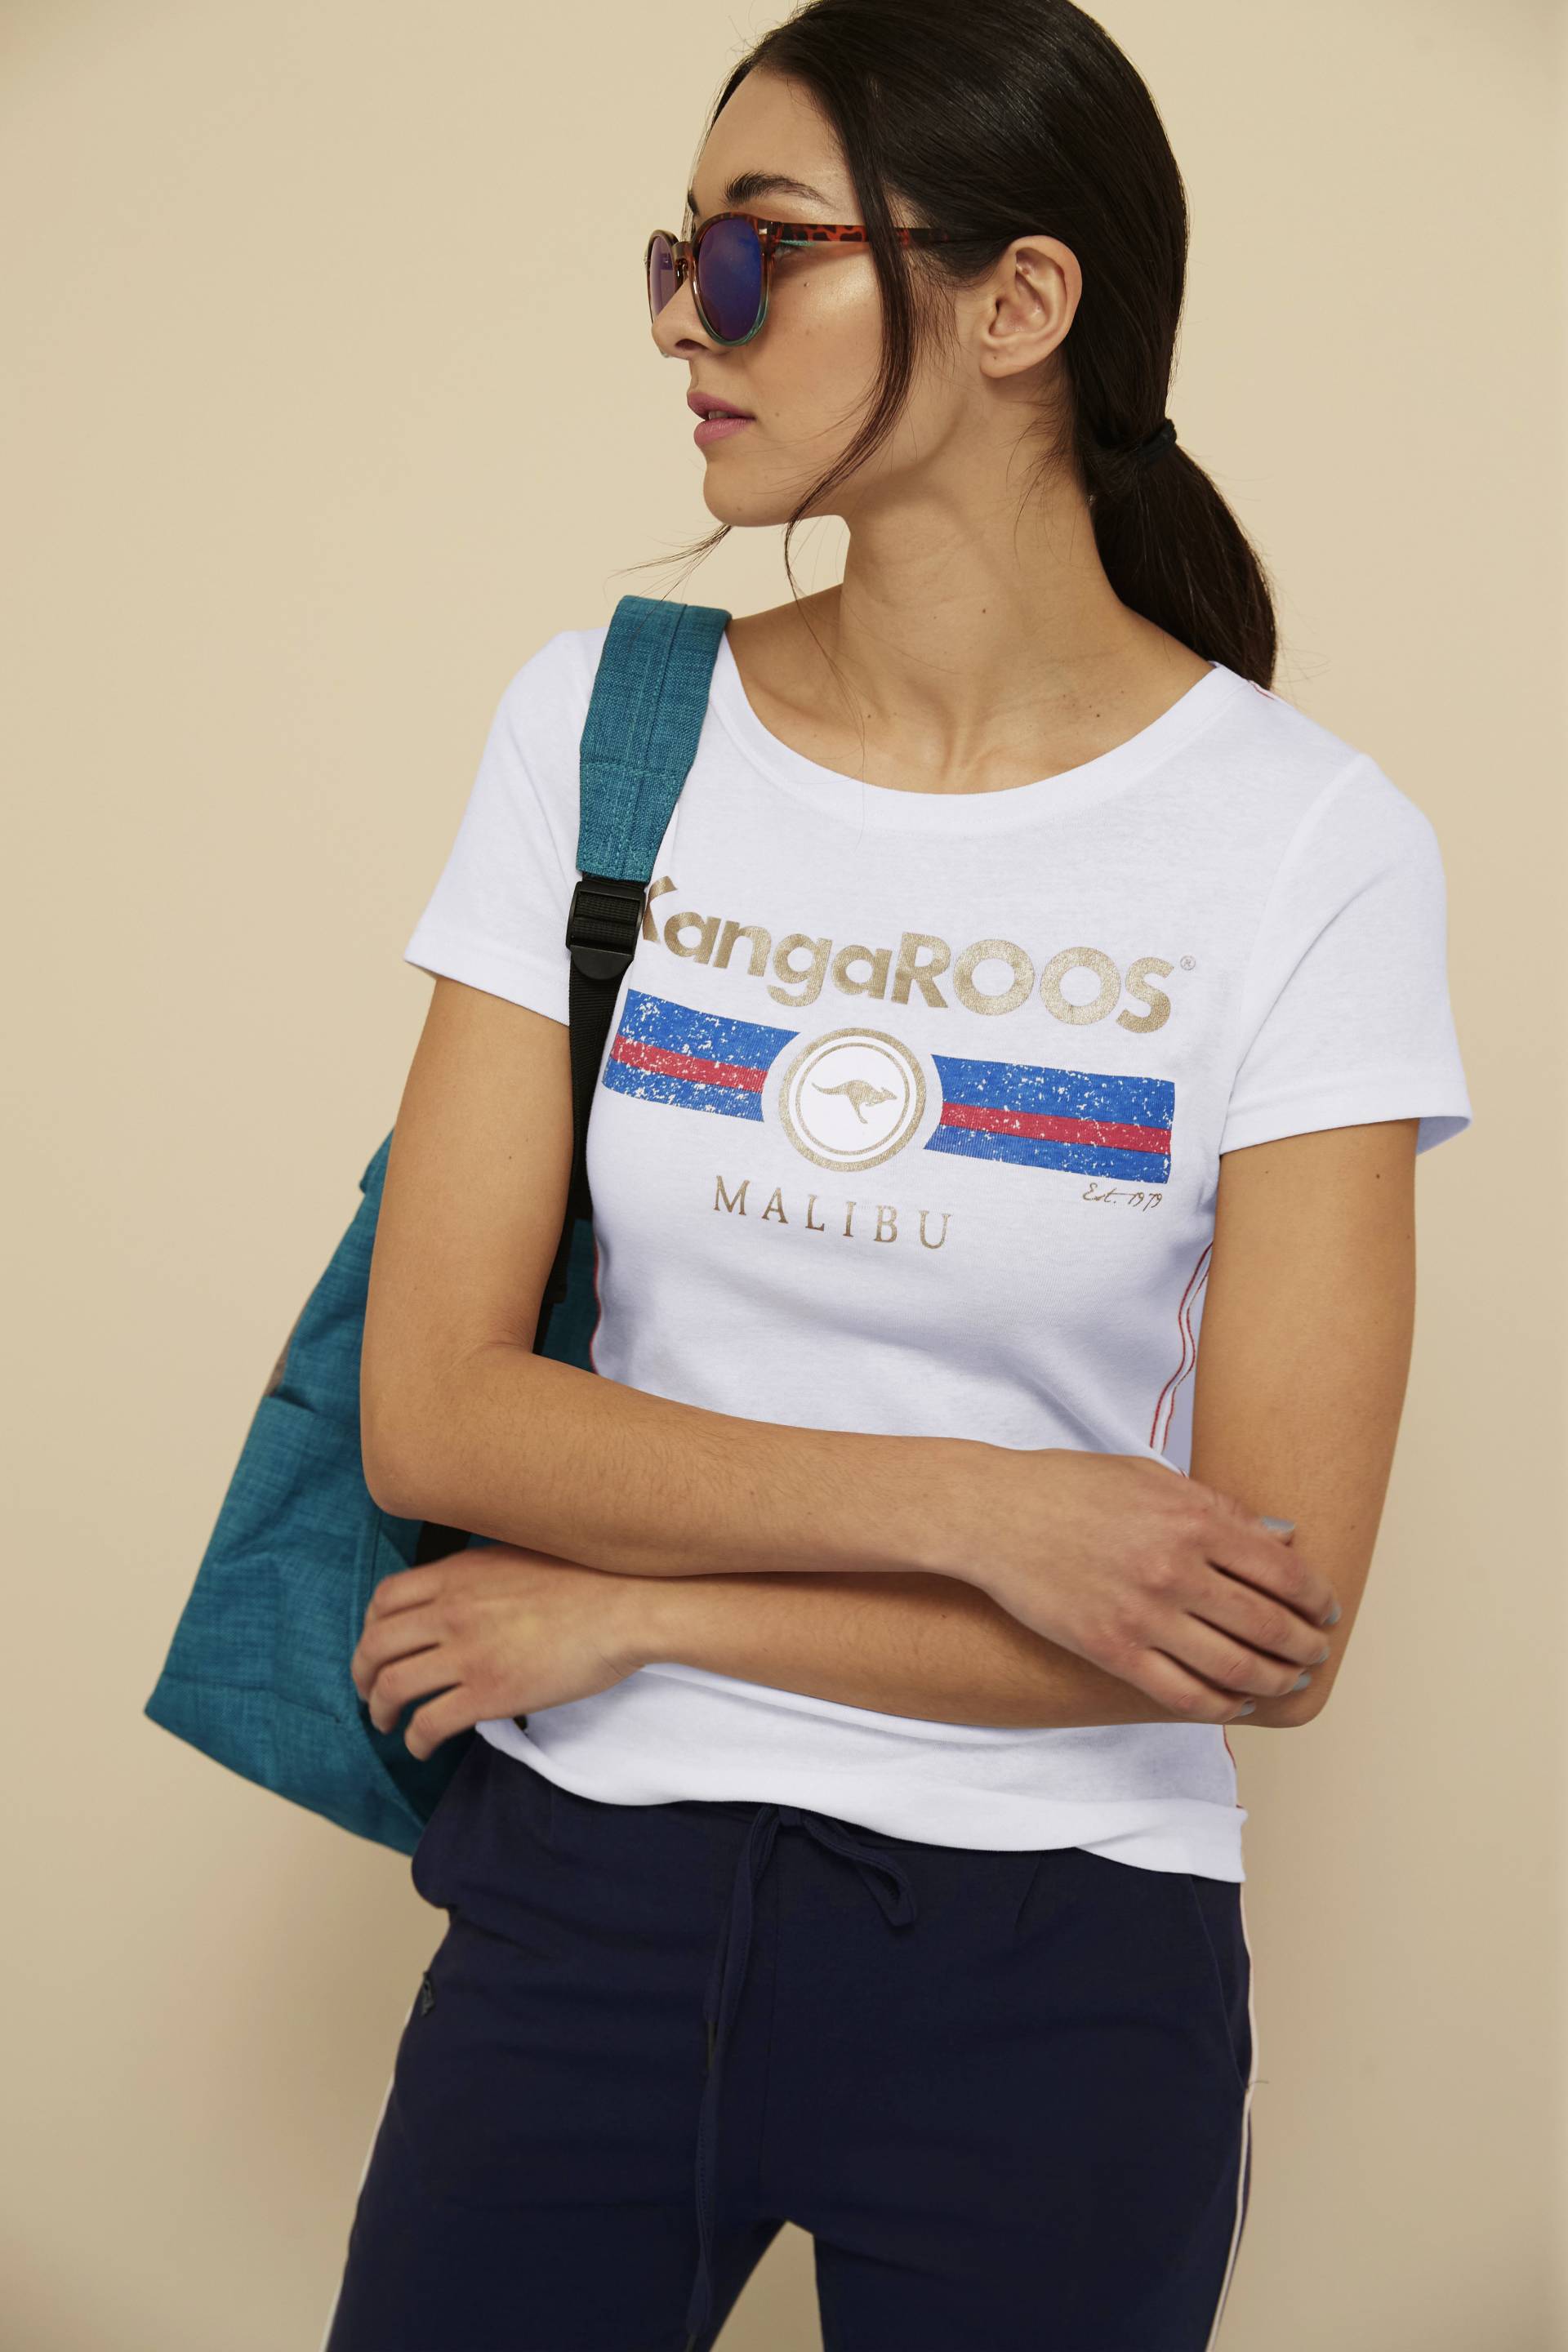 KangaROOS T-Shirt, mit Label Metallic Print von KangaROOS